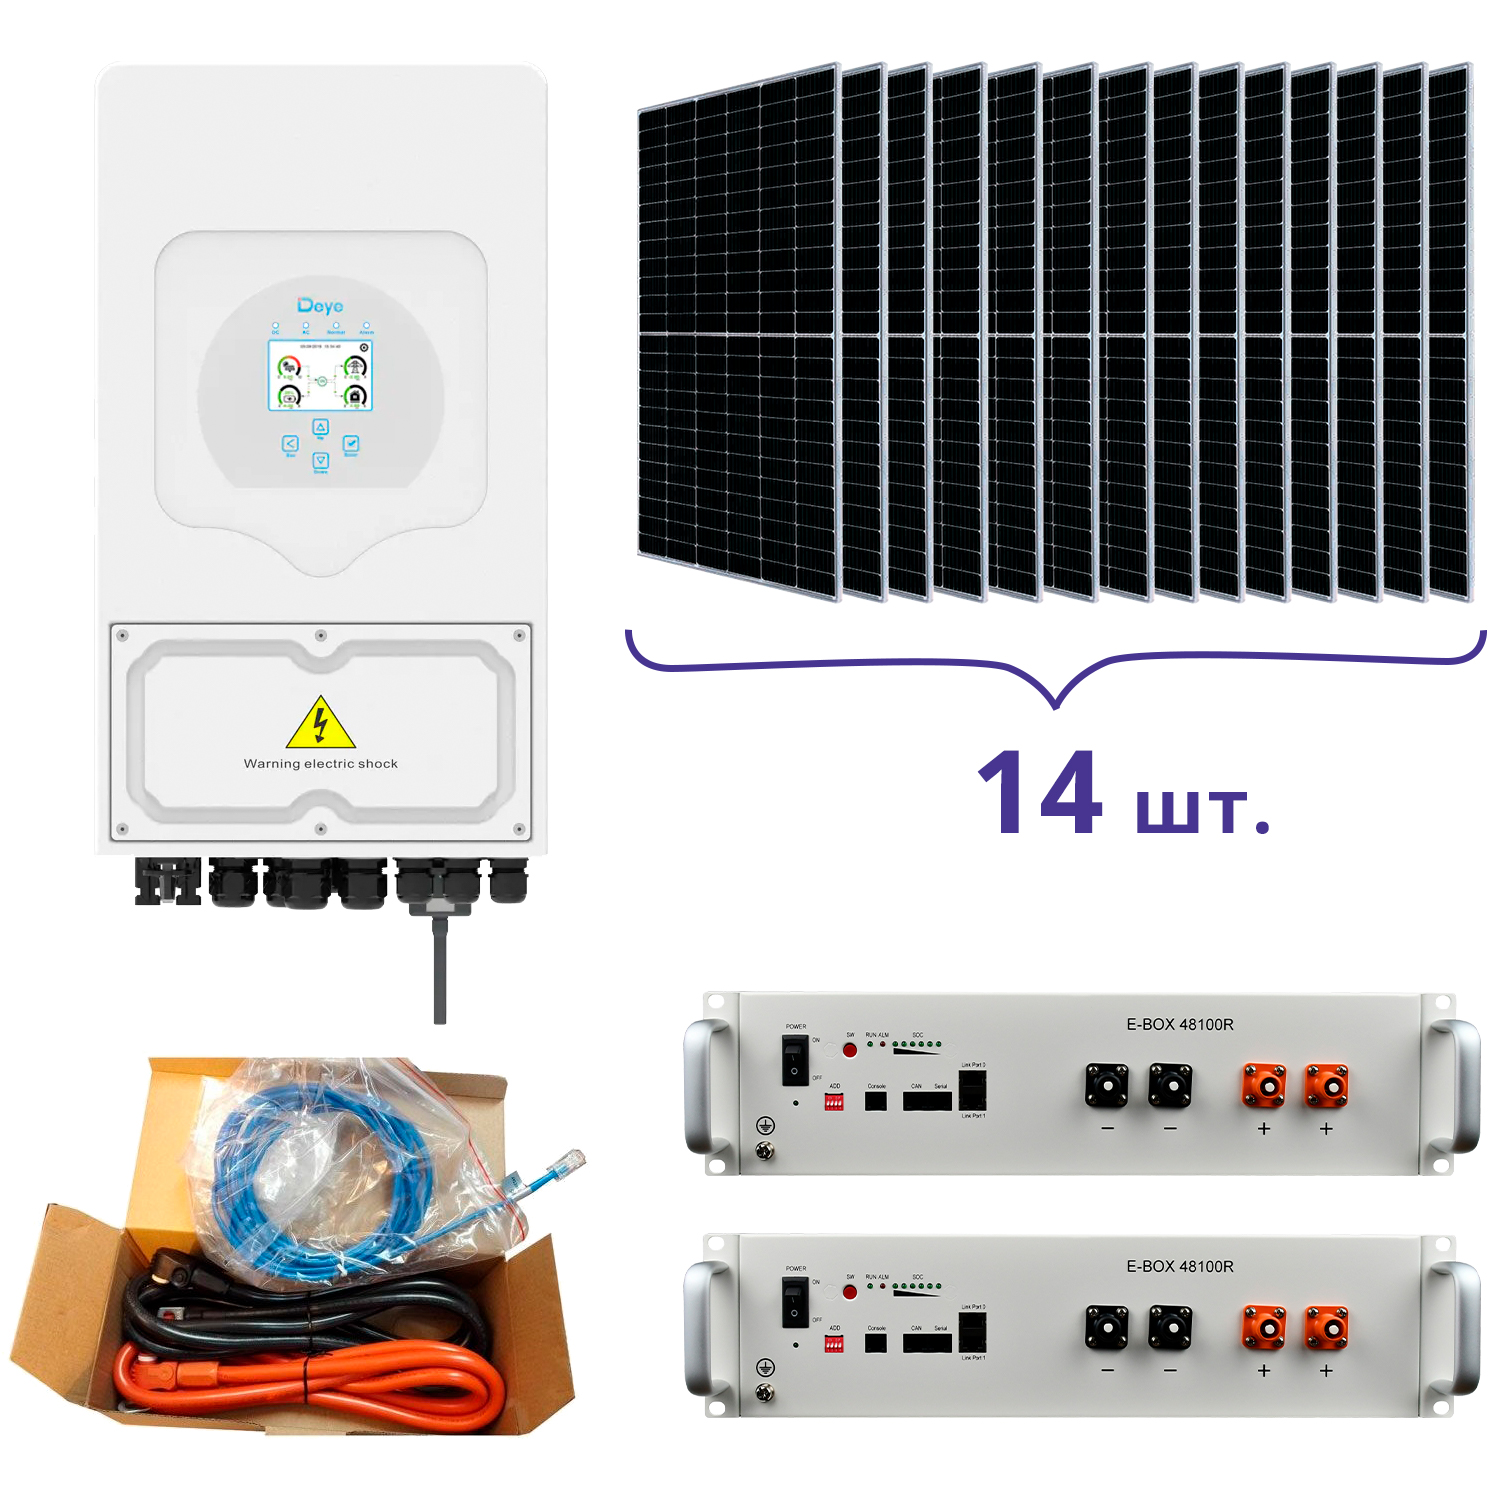 Характеристики система резервного питания для офиса Deye SUN-5K-SG03LP1-EU+Pytes E-BOX-48100R-2шт.+Battery Cable Kit-1шт.+JA Solar JAM72S20-460/MR 460 Wp, Mono-14шт.+кабель